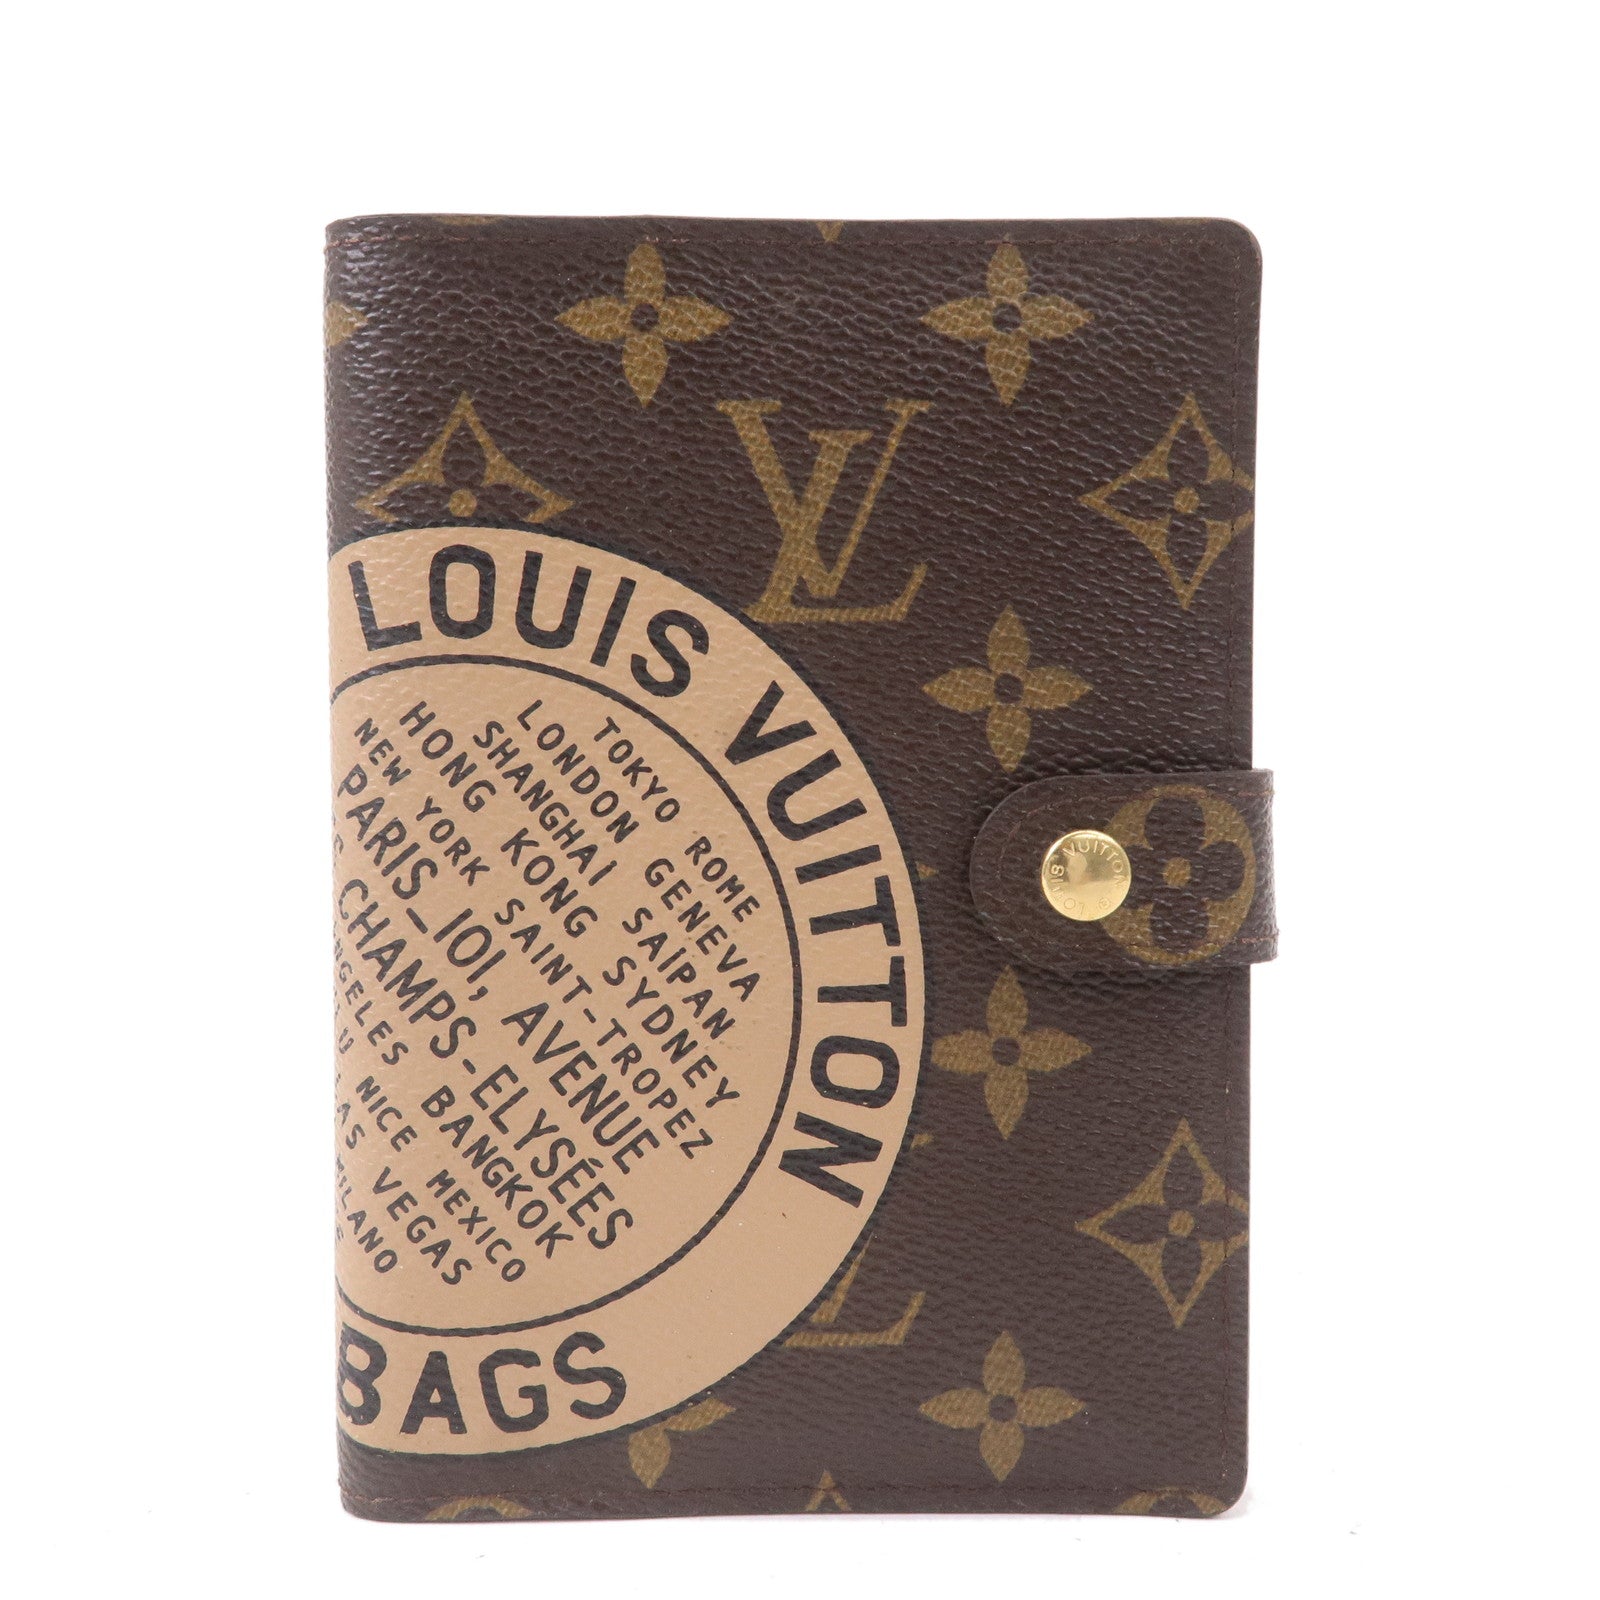 Louis Vuitton Agenda PROS & CONS